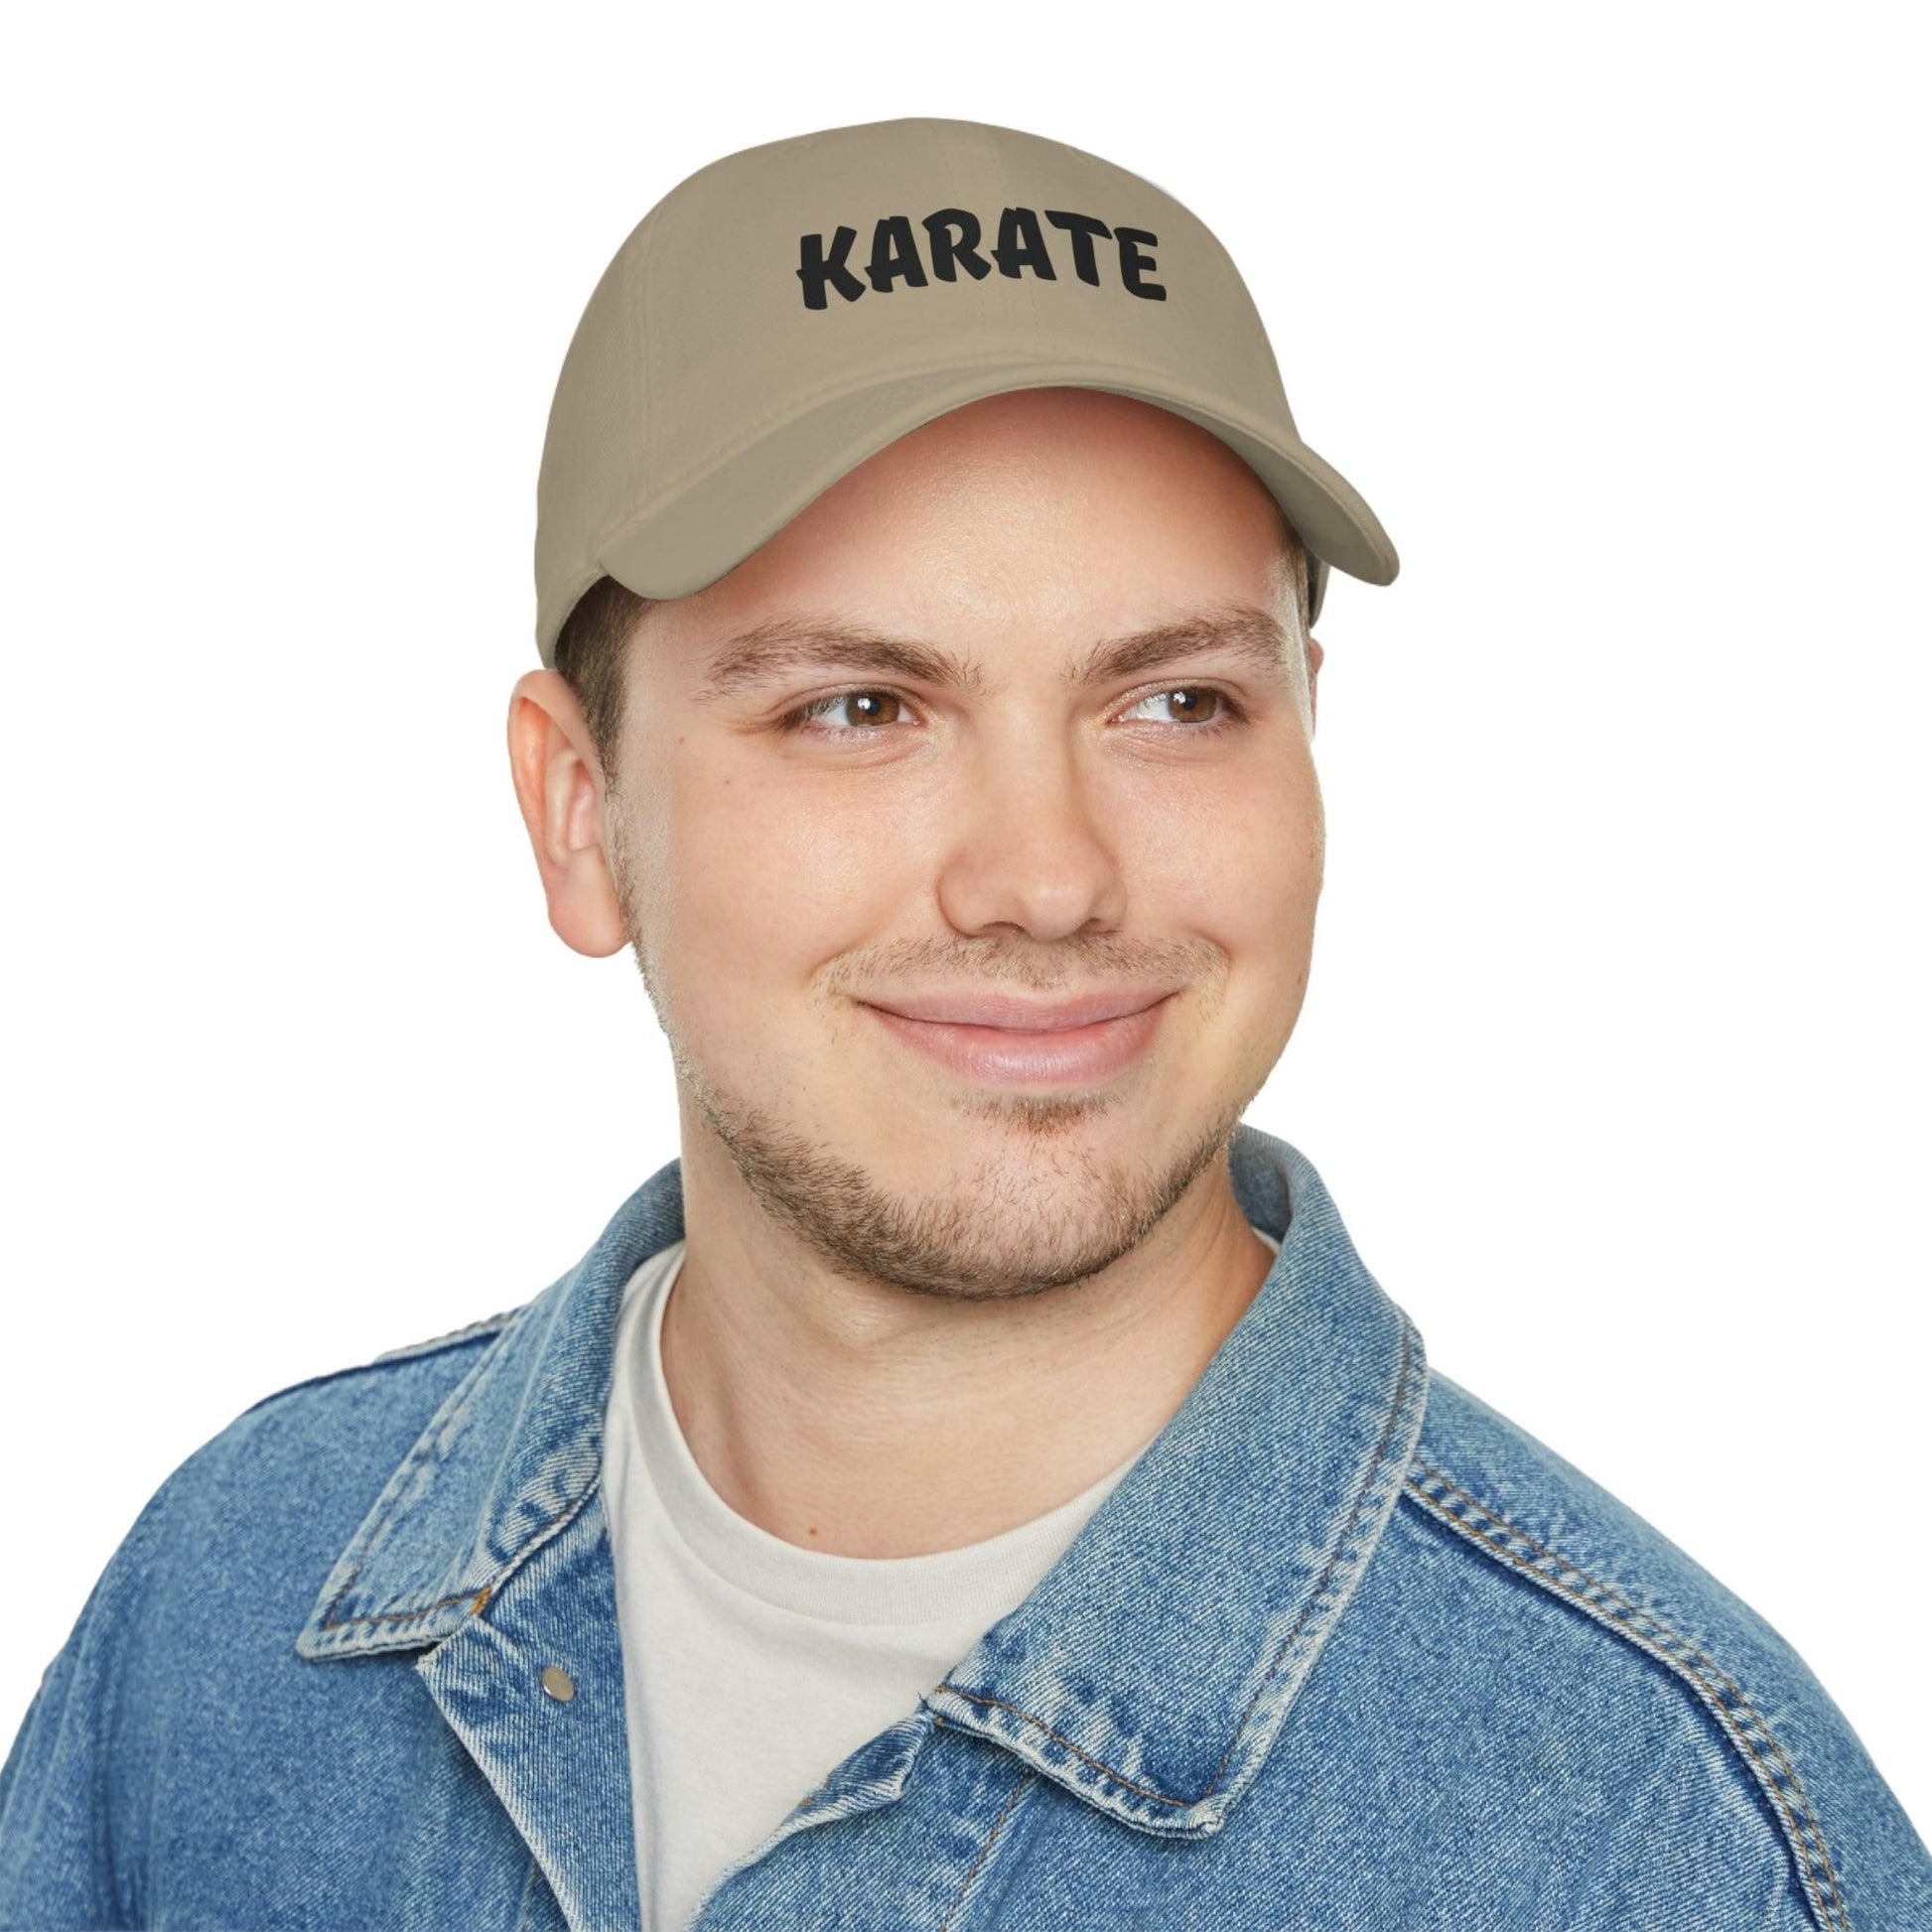 Karate Baseball Cap Cap Khaki One size 